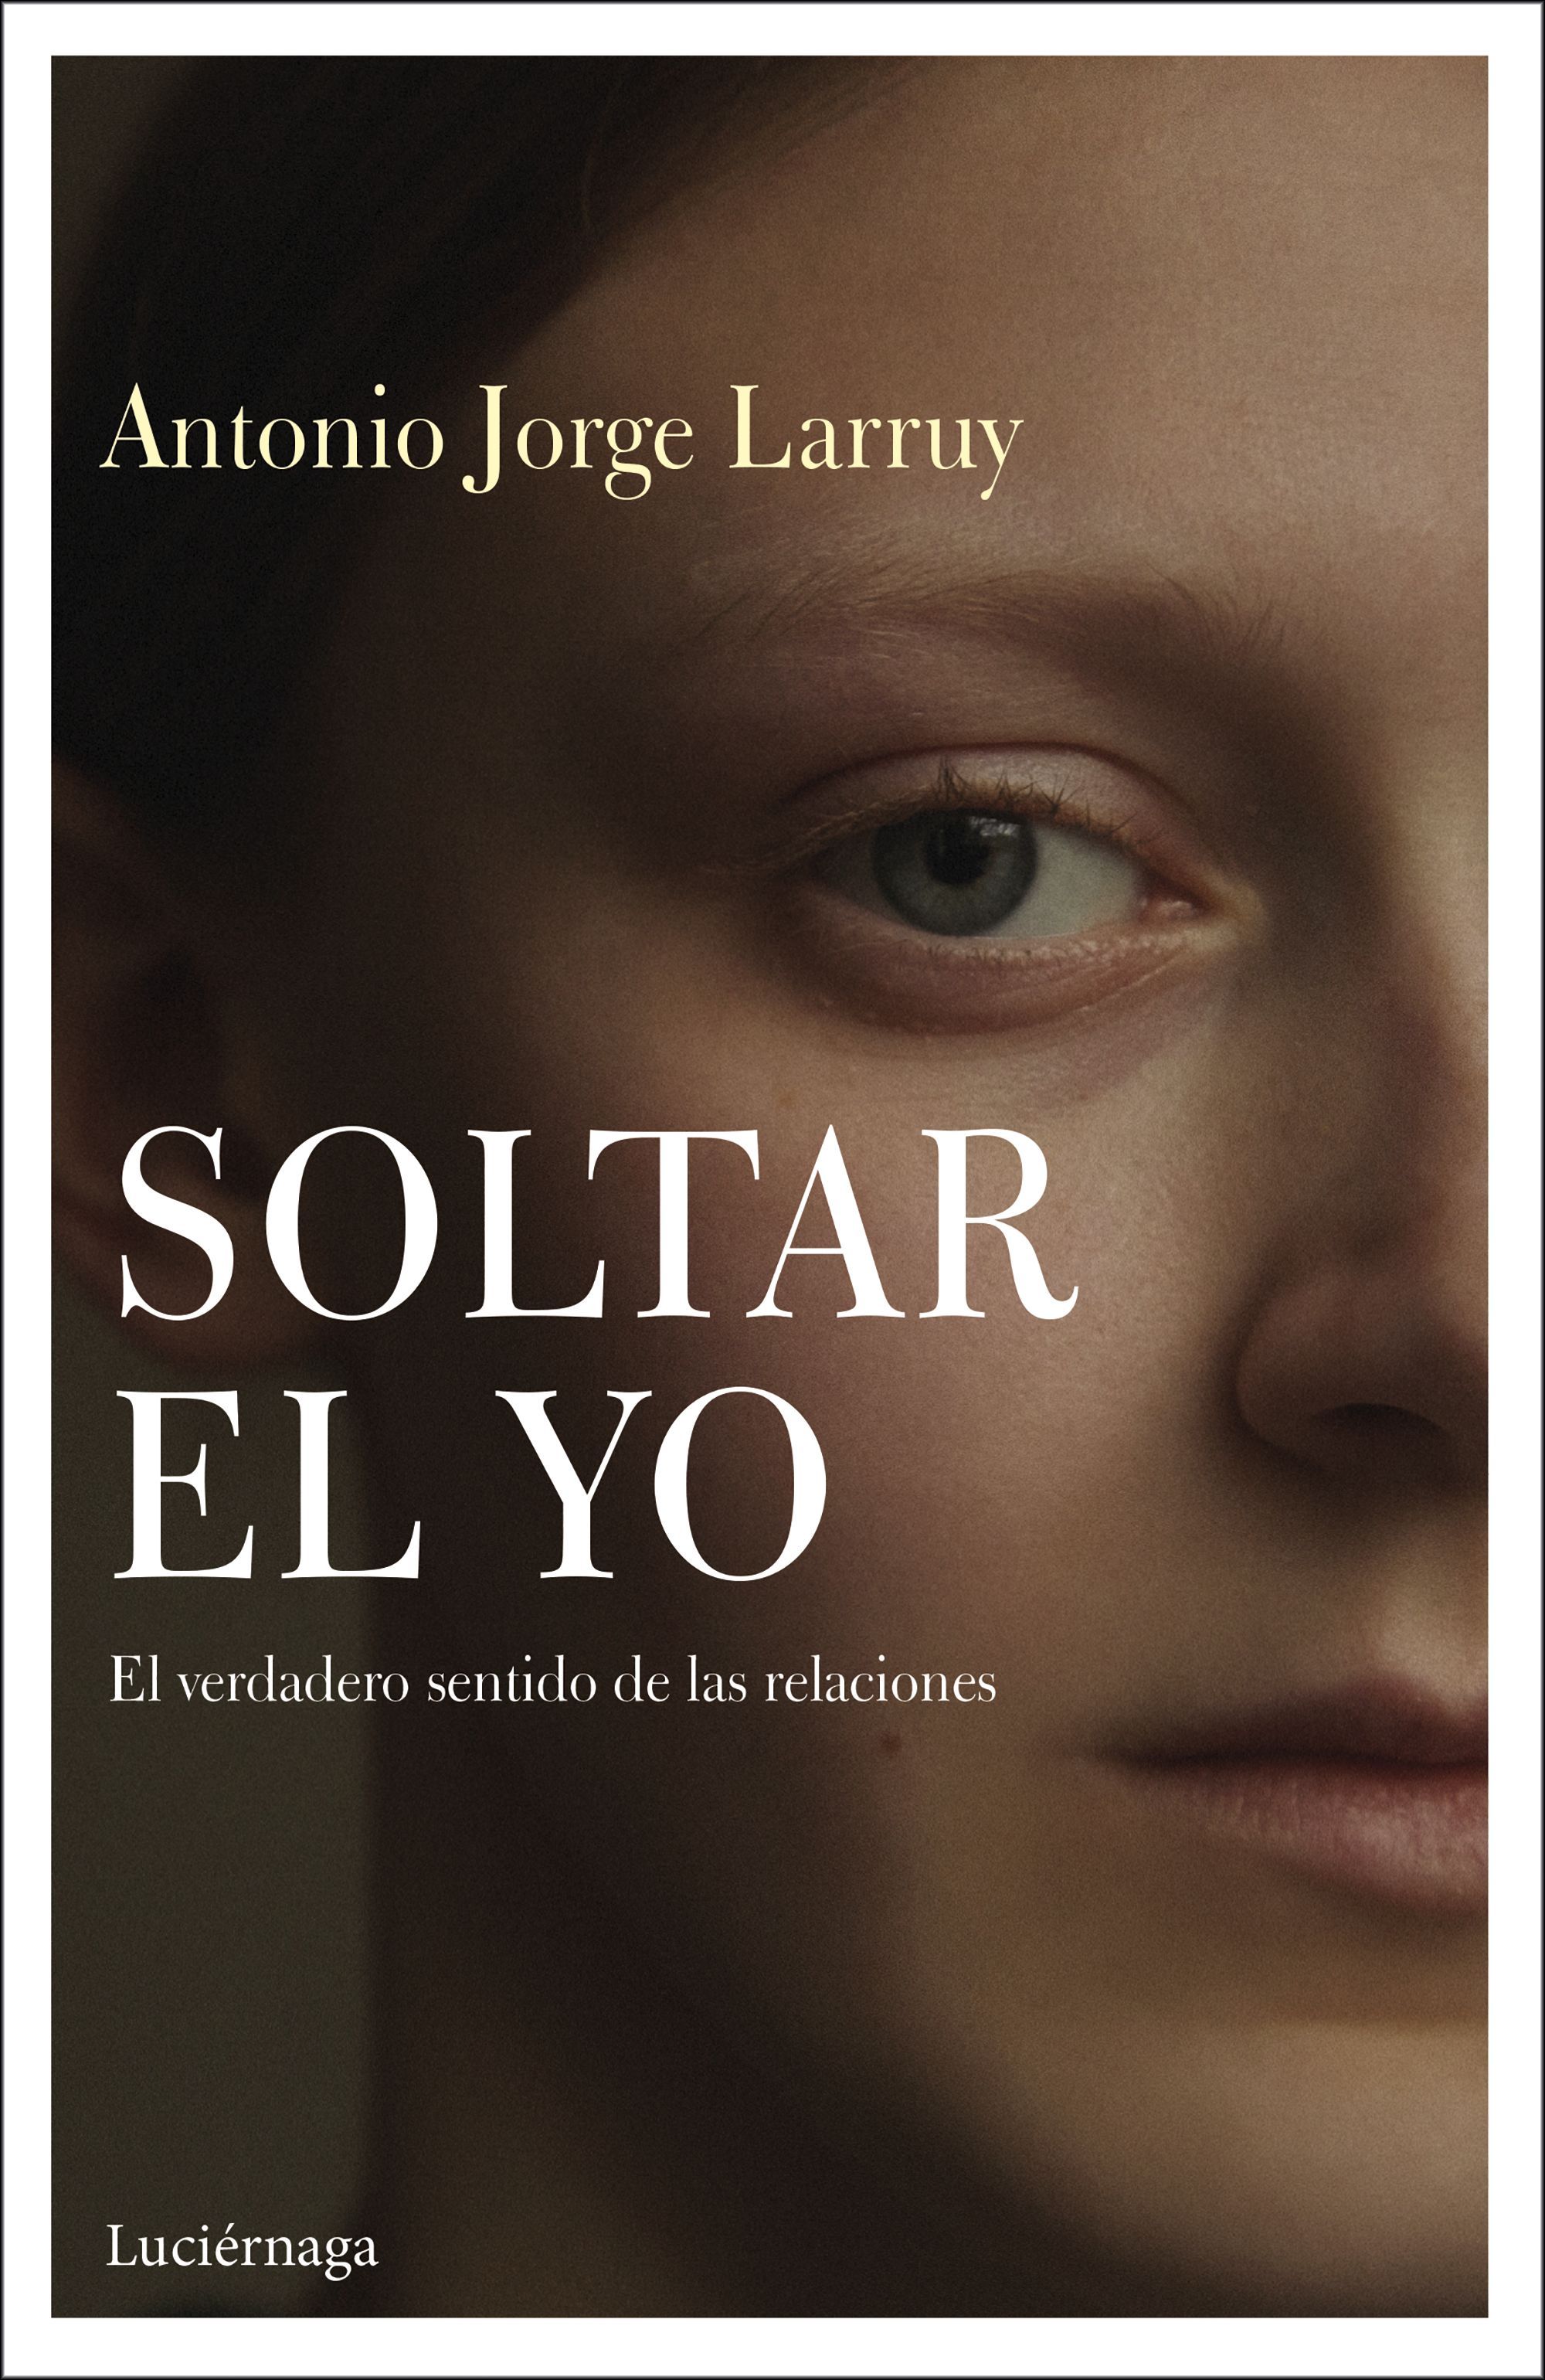 'Soltar el yo', el nuevo libro del experto en autoconocimiento de Antonio Jorge Larruy